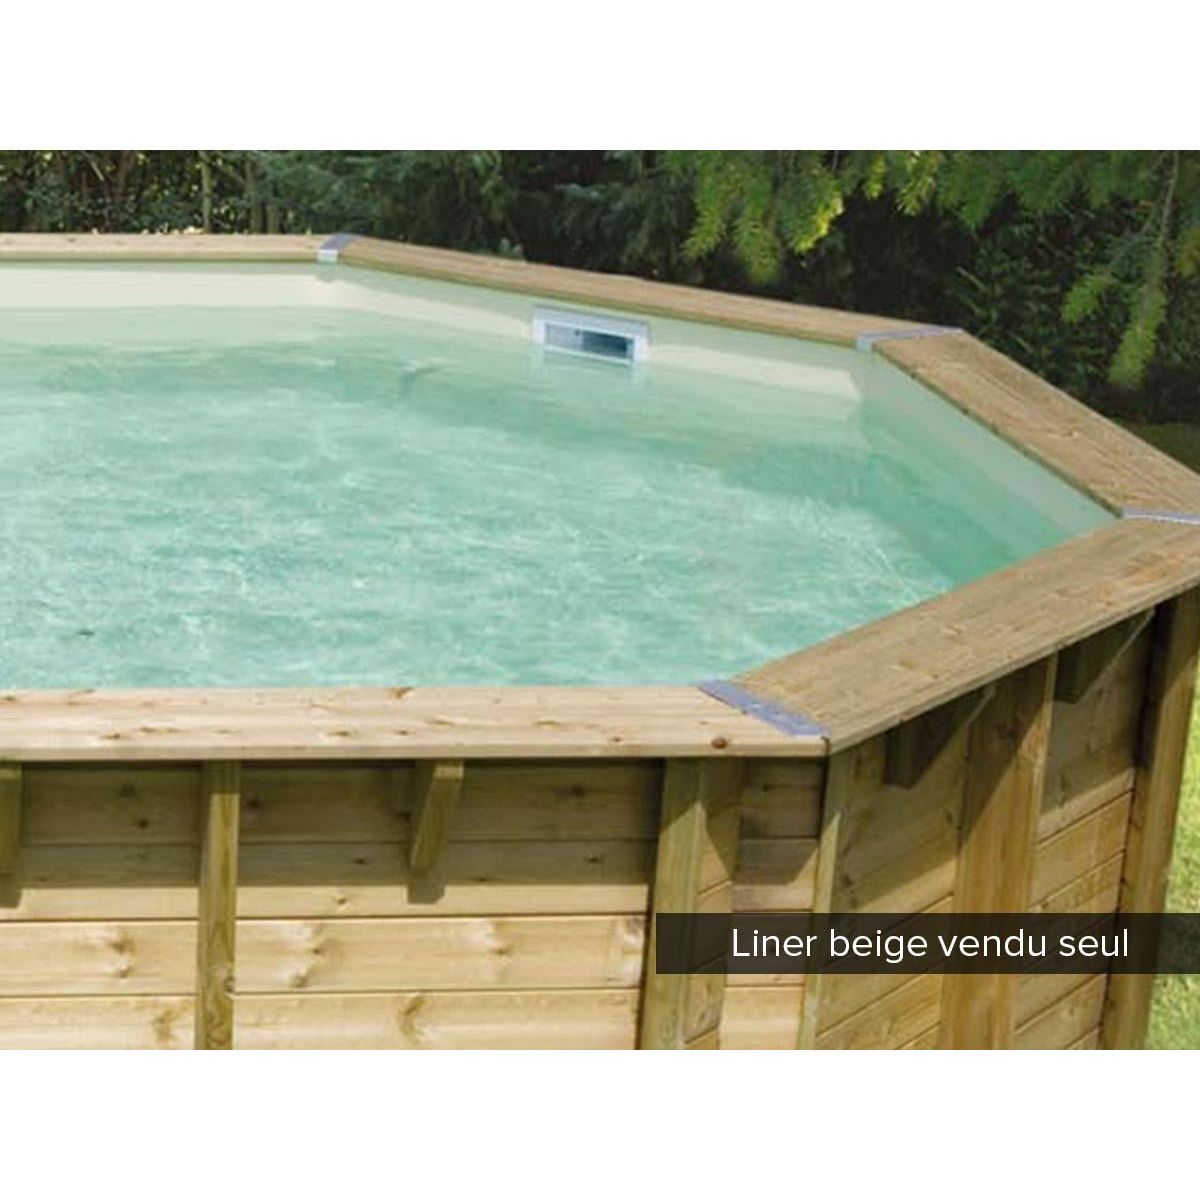 Ubbink Liner seul Beige pour piscine bois Azura 5,05 x 3,50 x 1,26 m - Ubbink